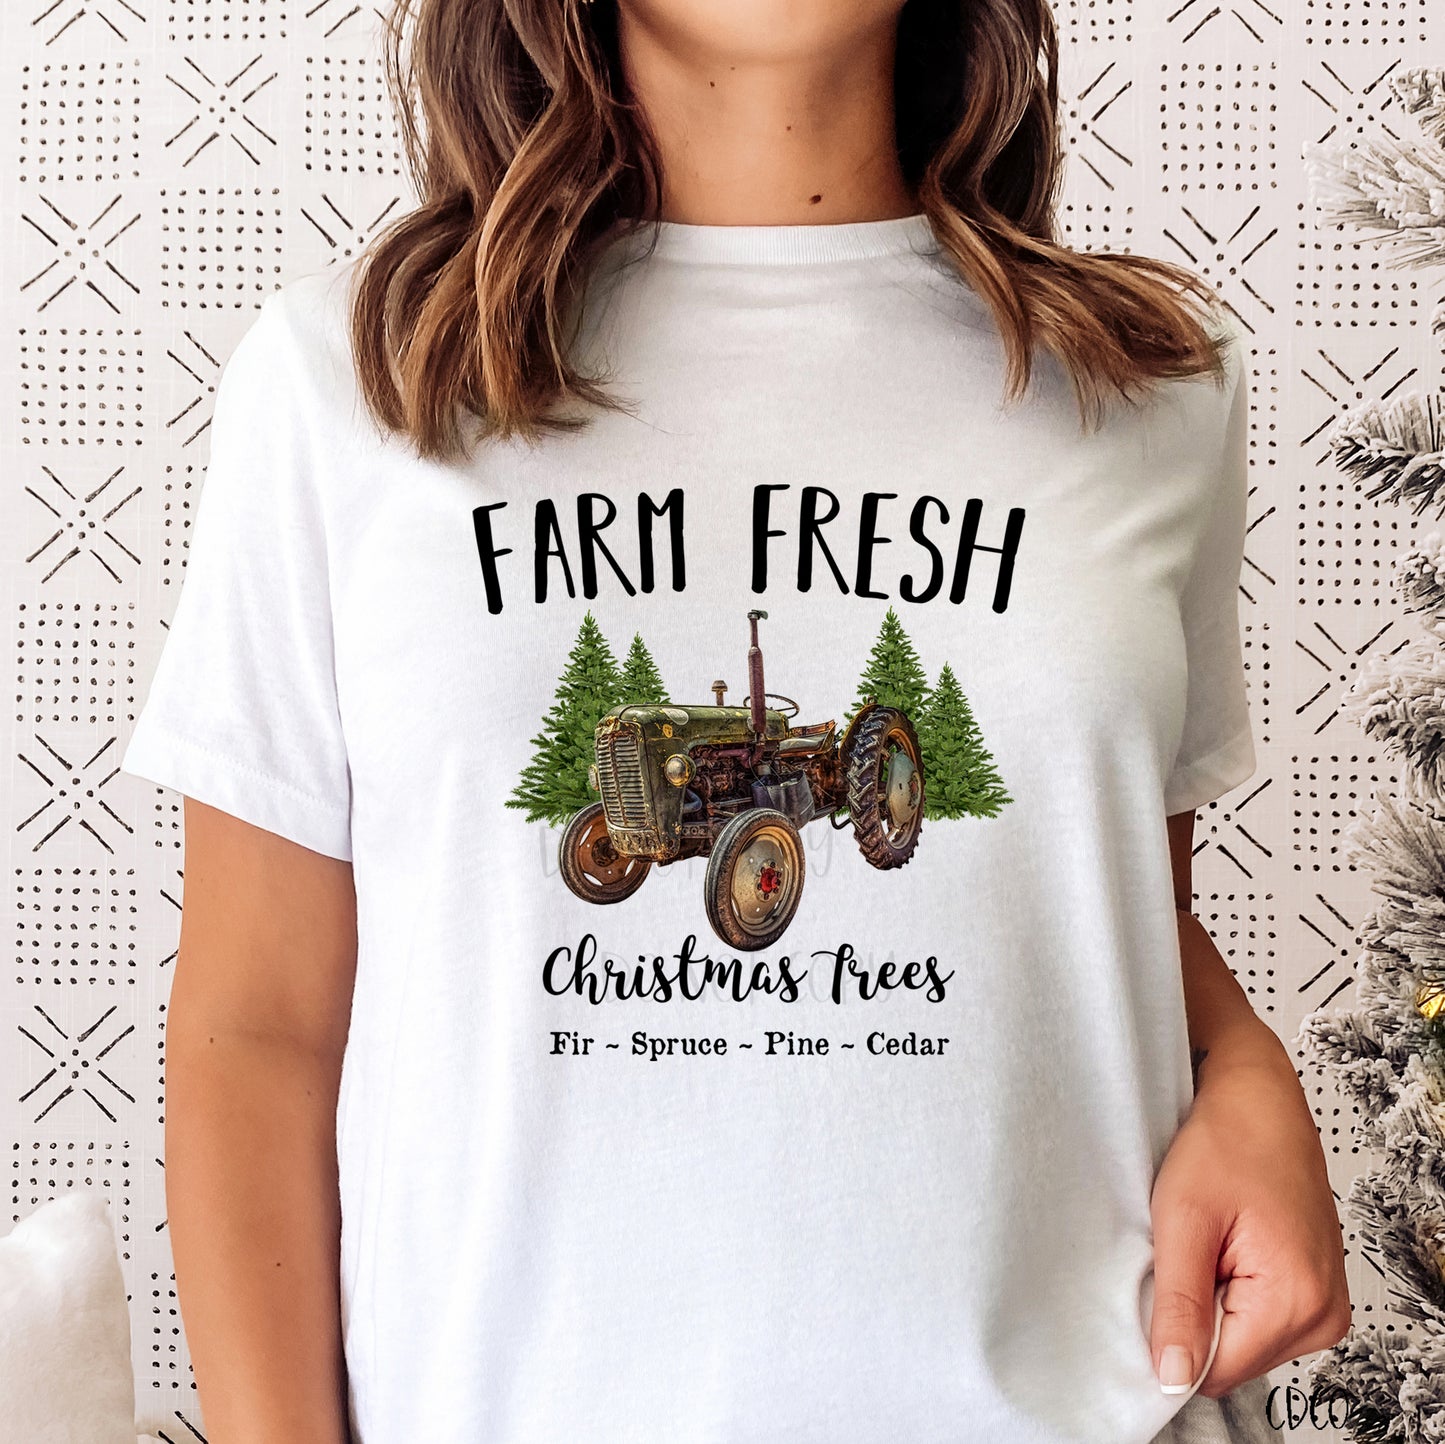 Farm Fresh Christmas Trees (350°-375°)